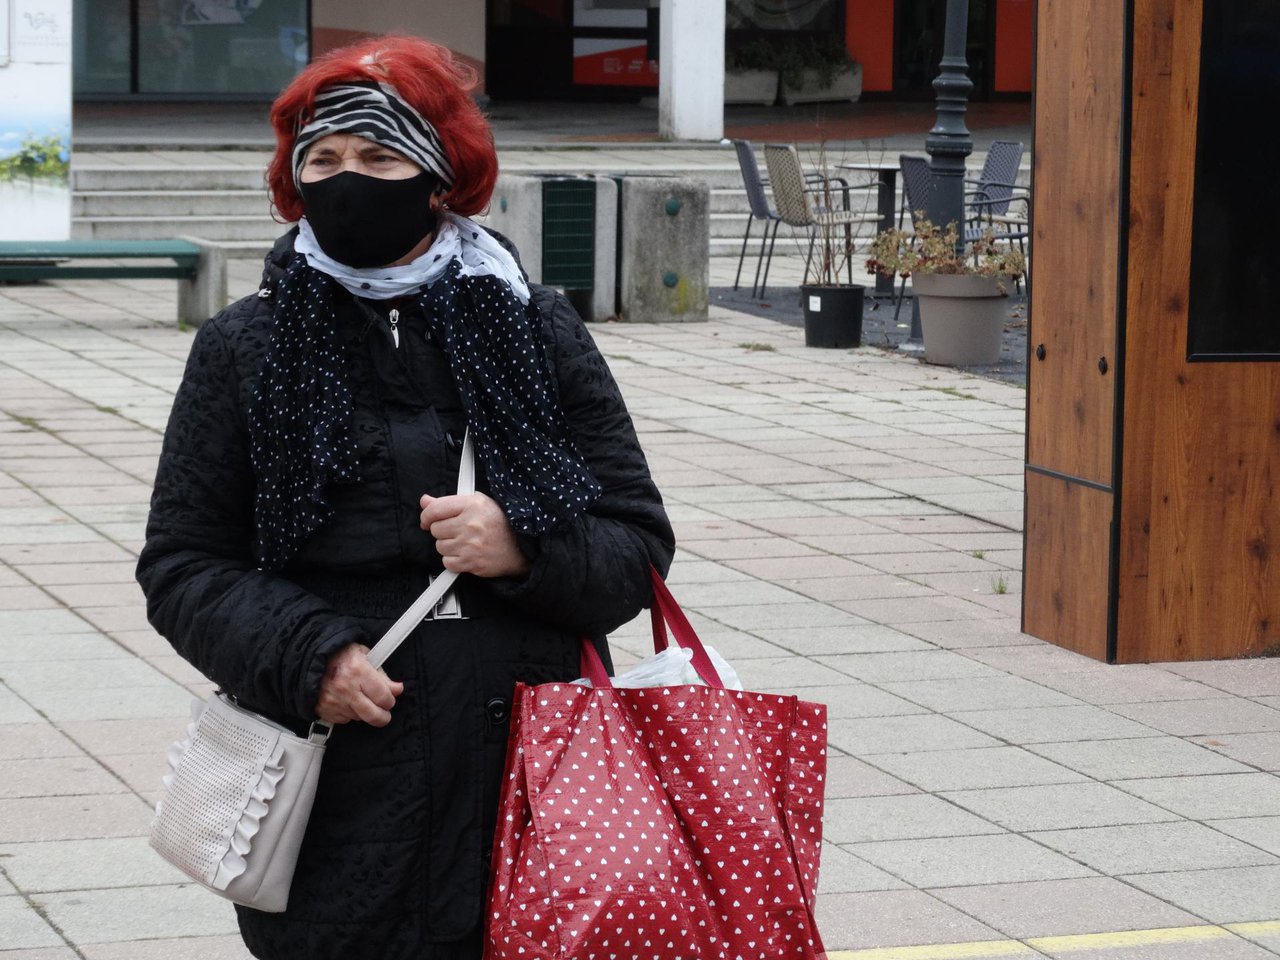 Fotografija: Daruvarčani na javnim površinama nose maske/Foto: Nikica Puhalo
